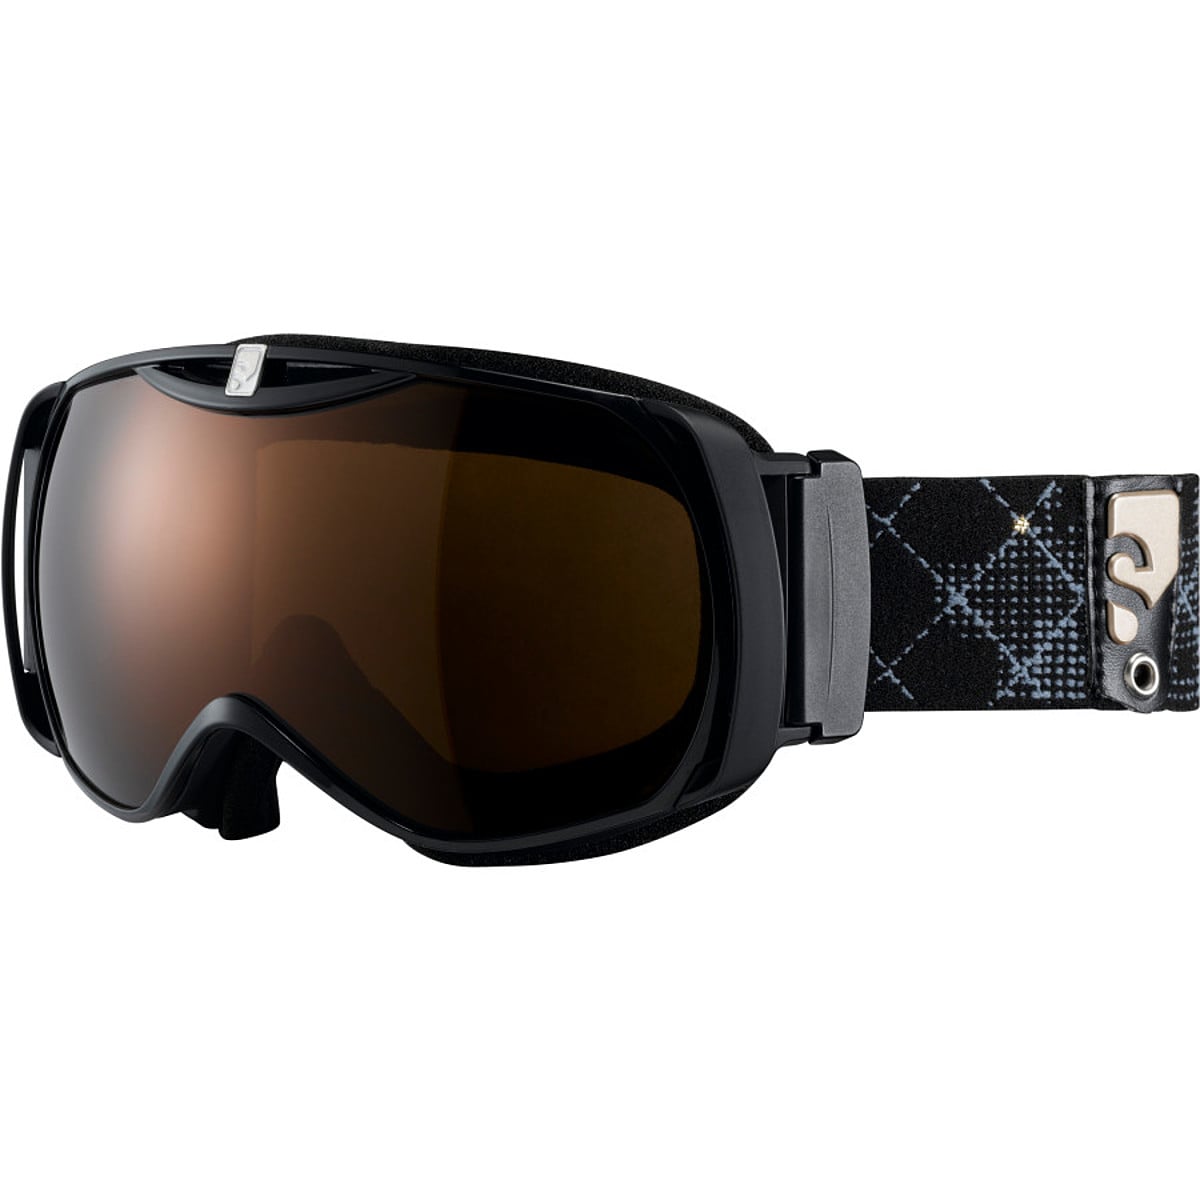 Undtagelse Og cylinder Salomon Xtend Xcess10 Goggle - Women's - Ski